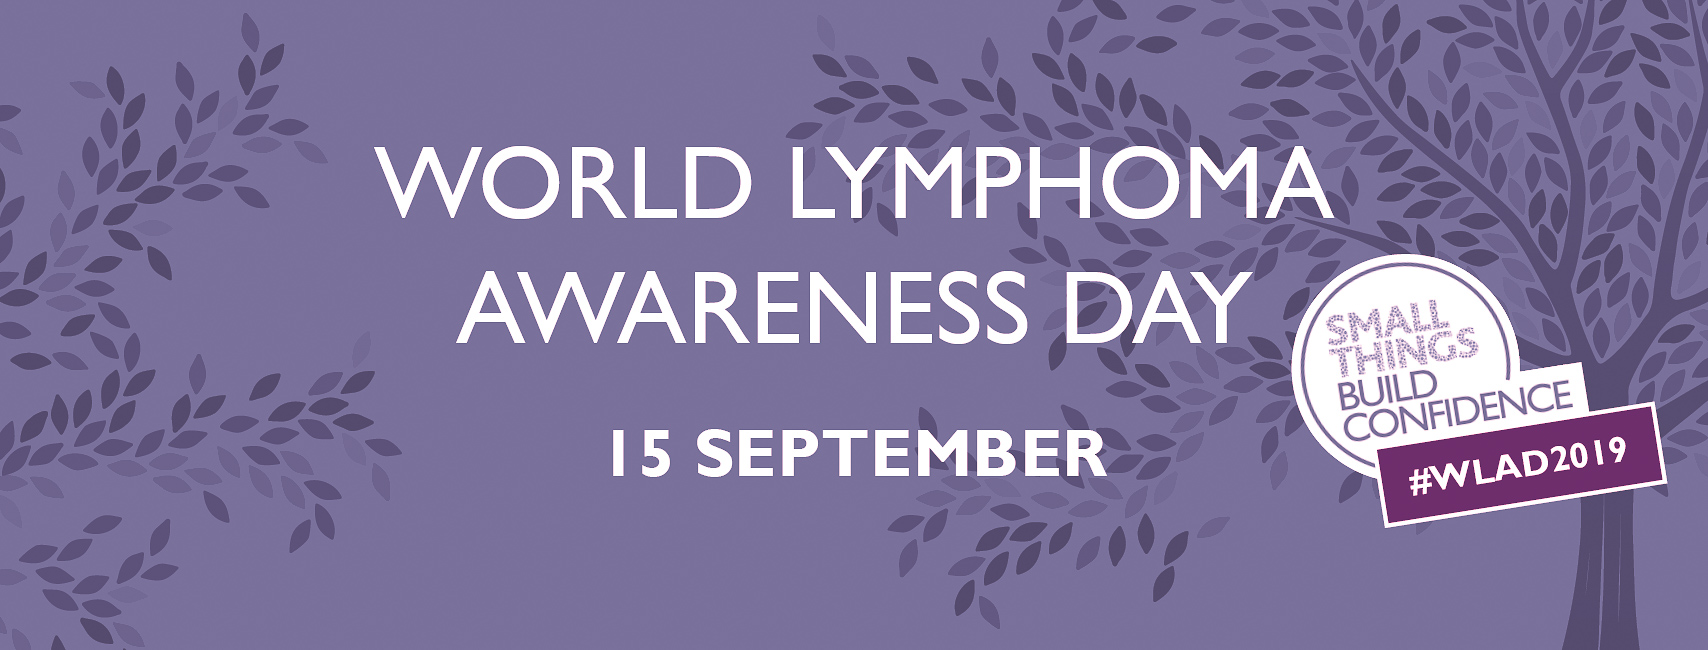 World Lymphoma Awareness Day 2019